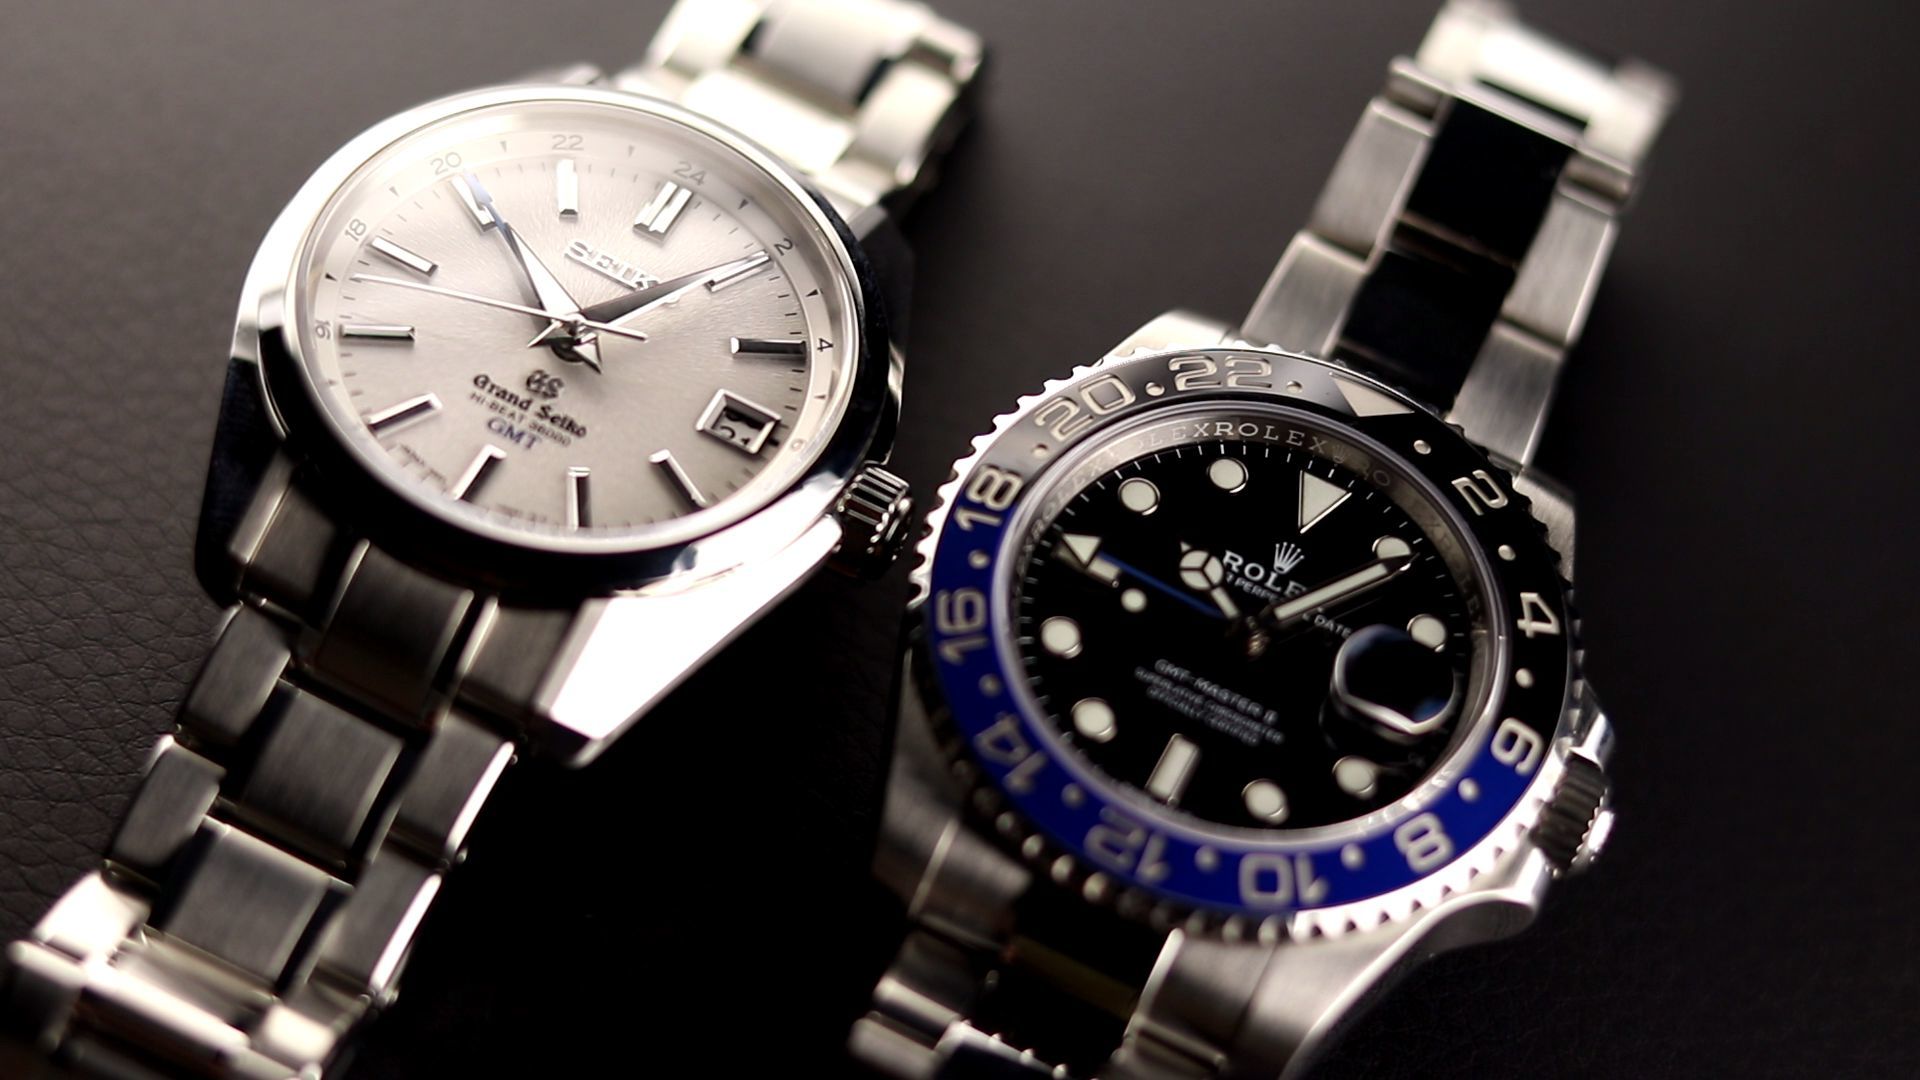 Grand Seiko vs Rolex 'Batman' Watch Review - Timepieces Blog